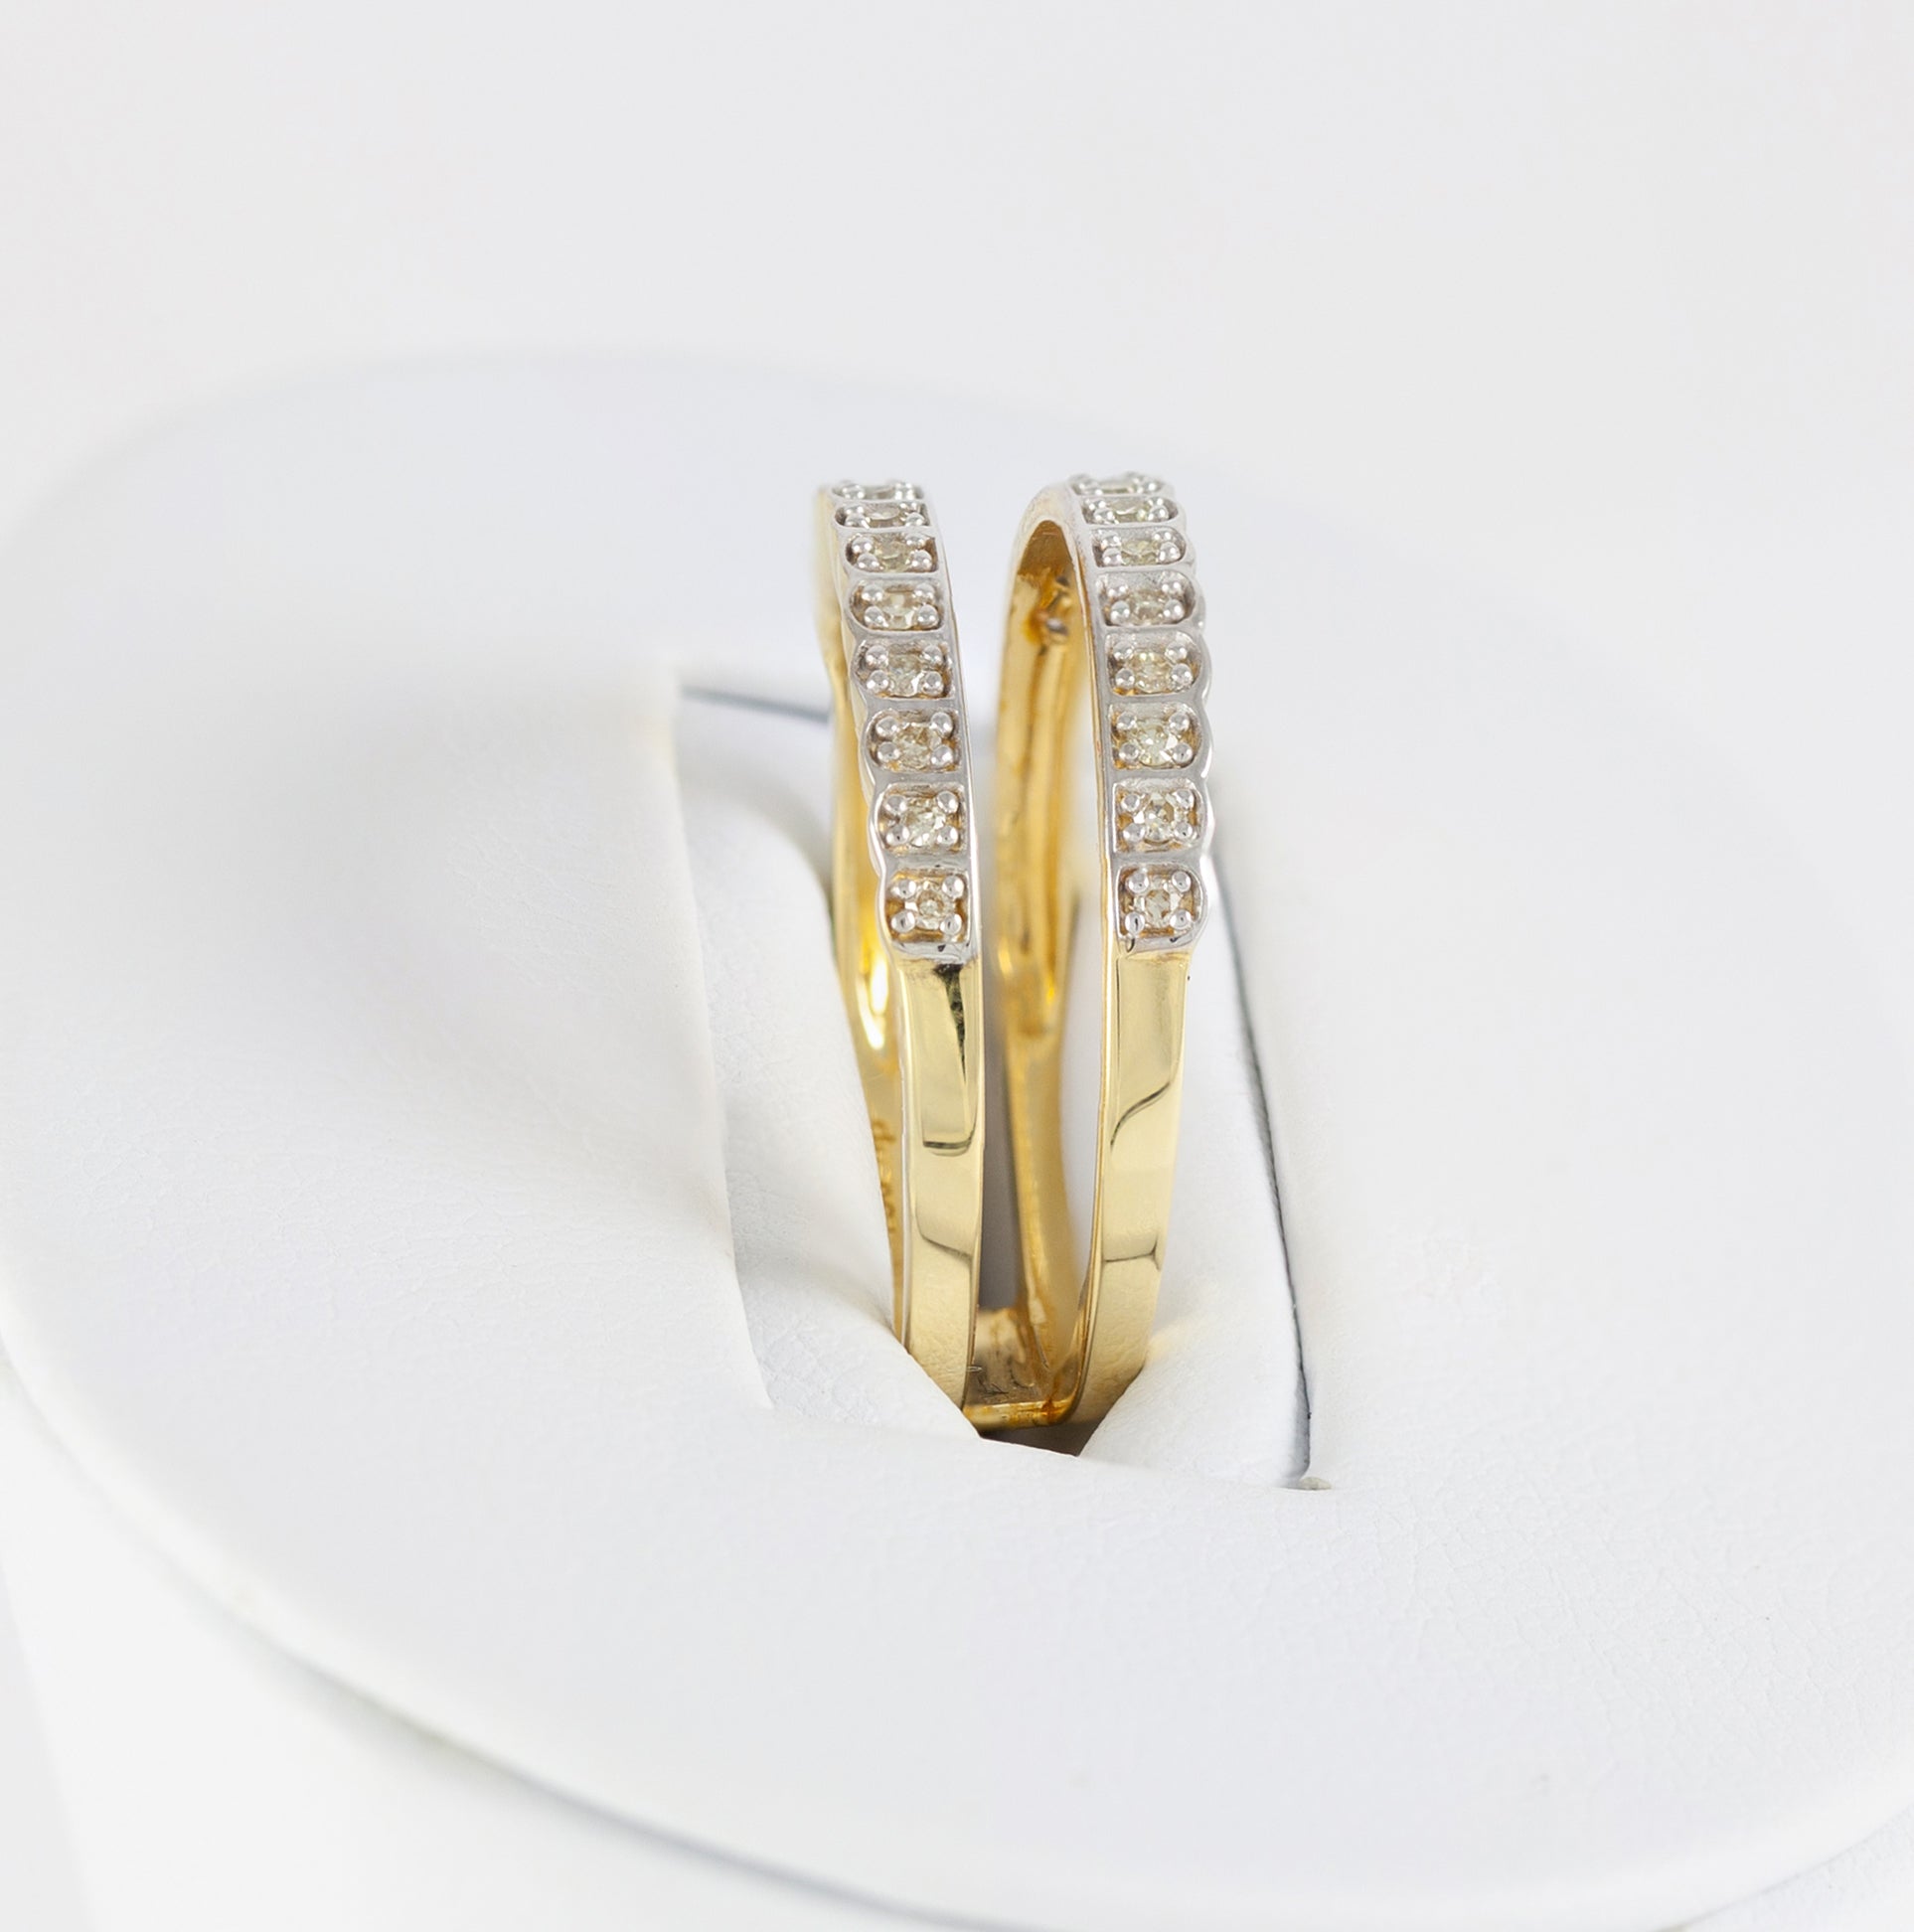 Anillo Infinity en oro amarillo 18k con diamantes zafiros rubíes y esmeraldas